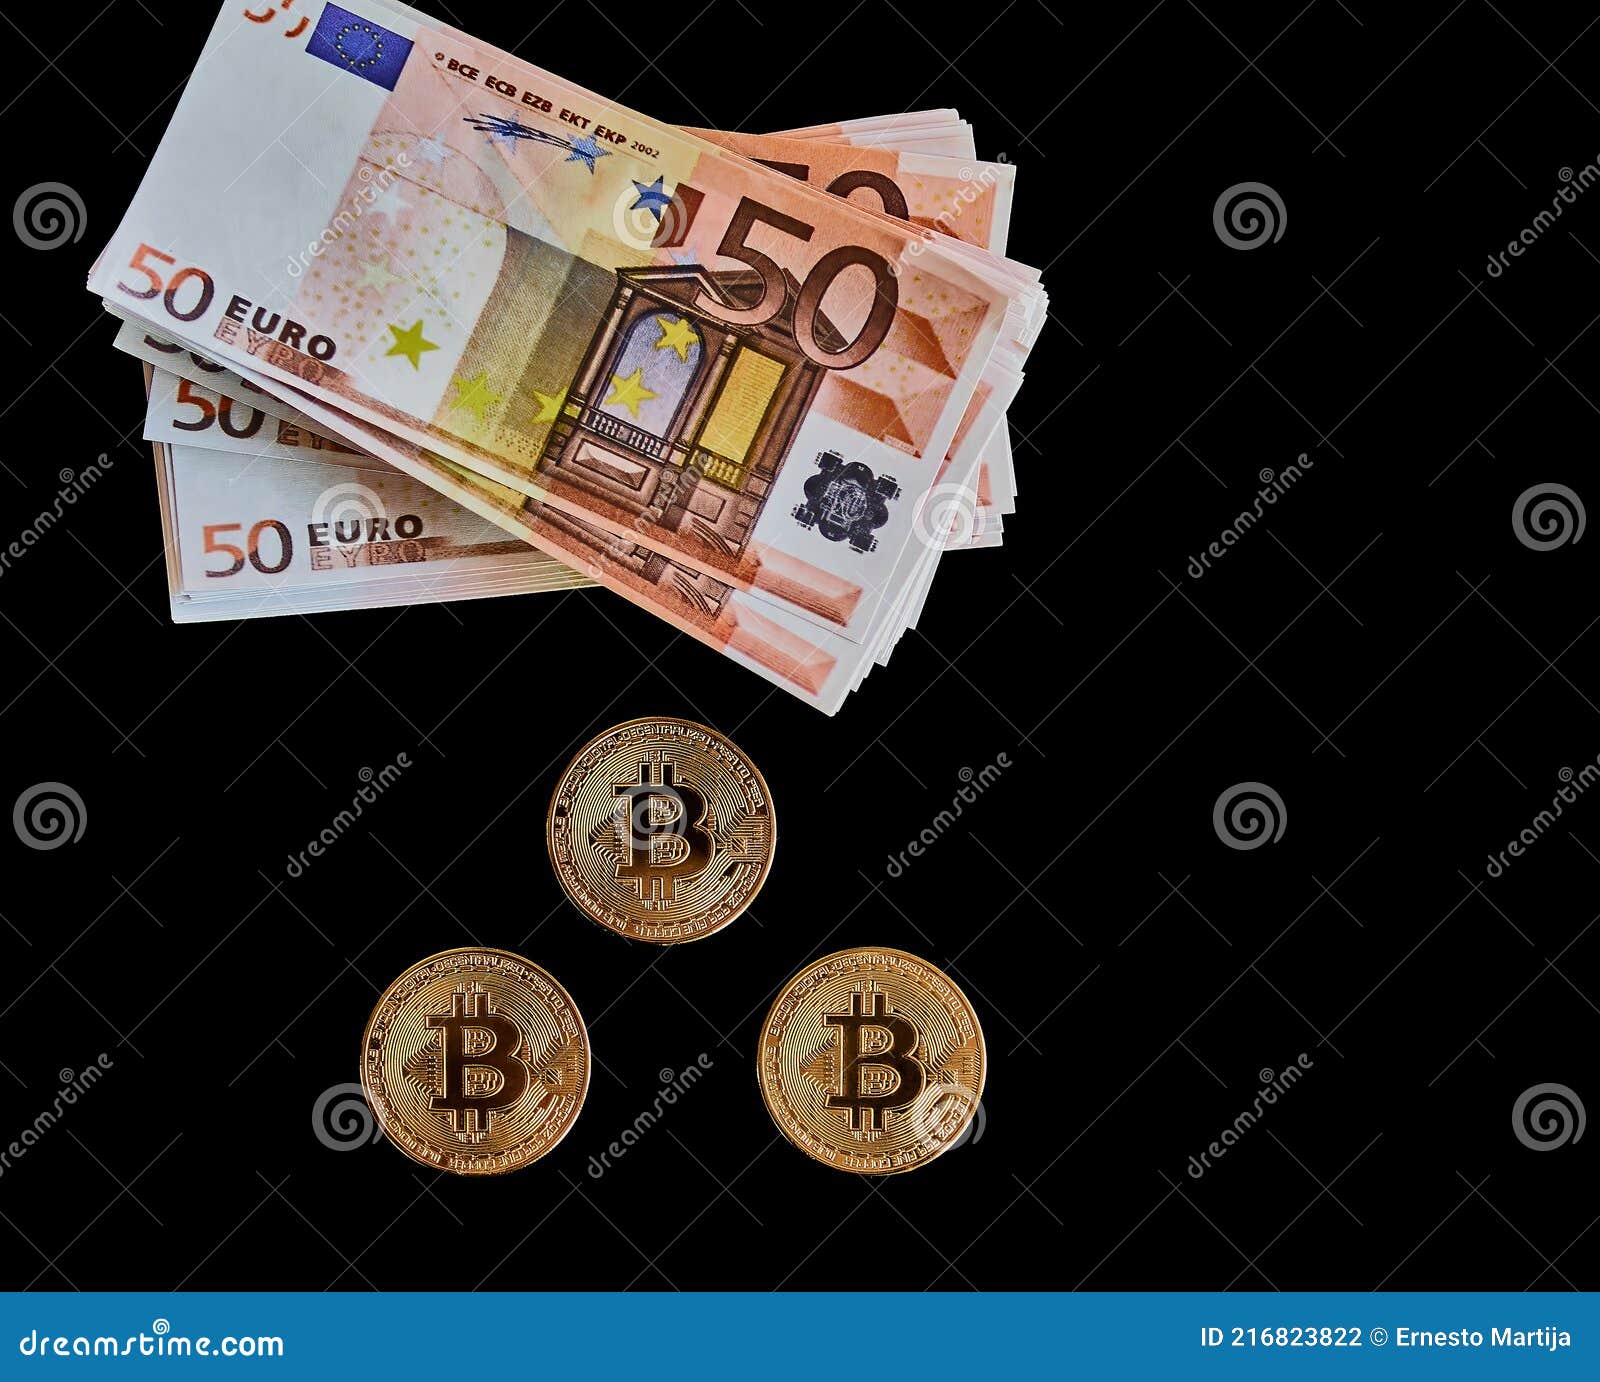 Обмен биткоин евро в рубли пункт обмена валют владикавказ